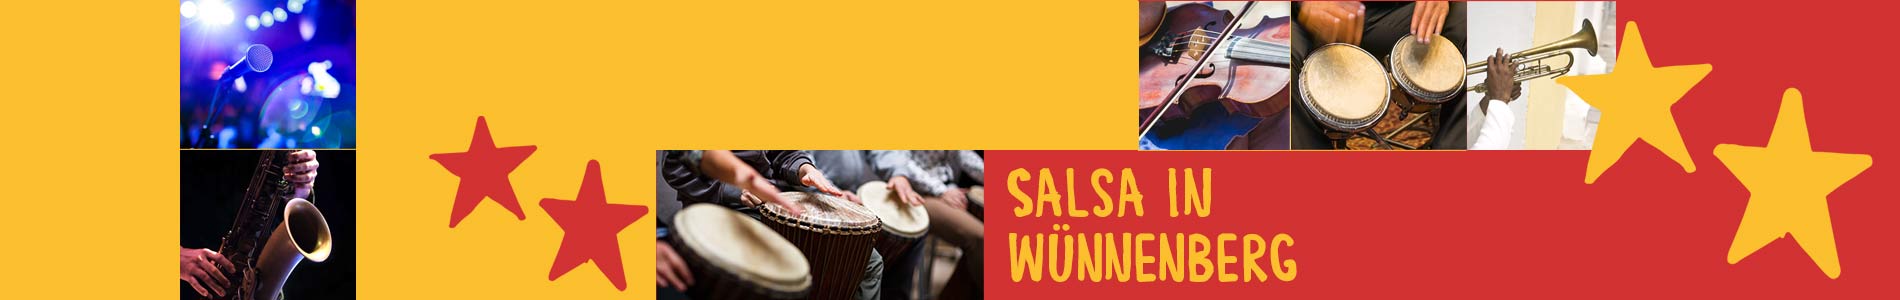 Salsa in Wünnenberg – Salsa lernen und tanzen, Tanzkurse, Partys, Veranstaltungen